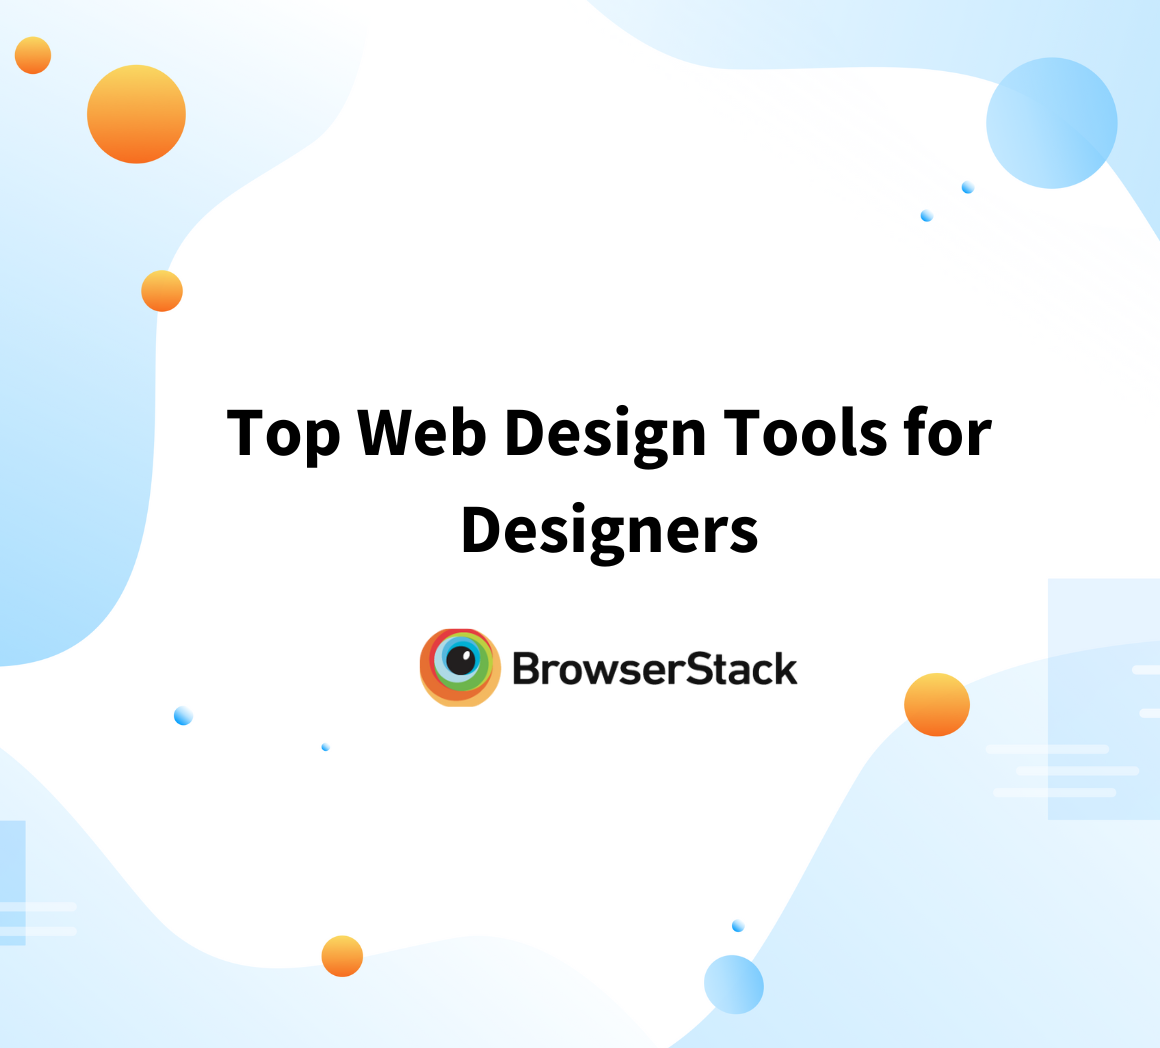 web design tools